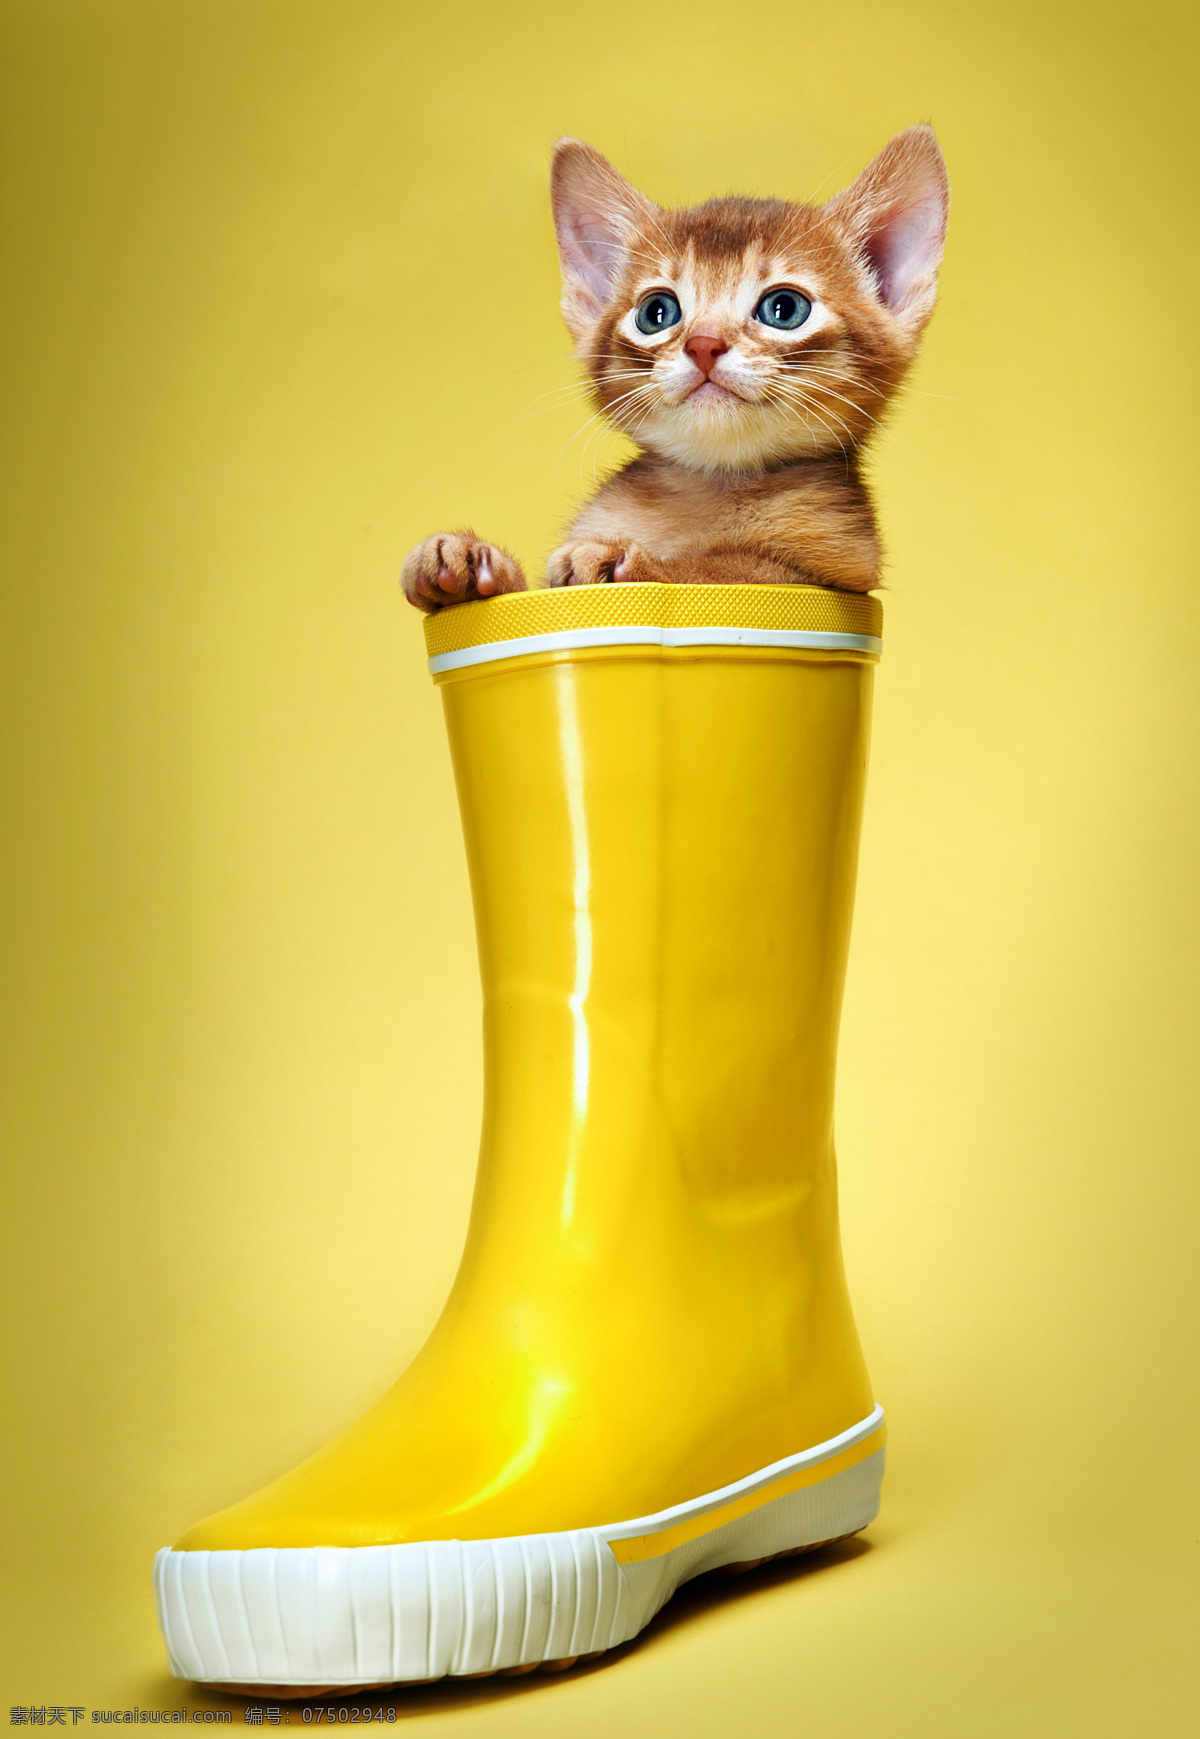 雨靴 里 小猫 雨靴里的猫 猫 宠物猫 可爱动物 动物世界 猫咪图片 生物世界